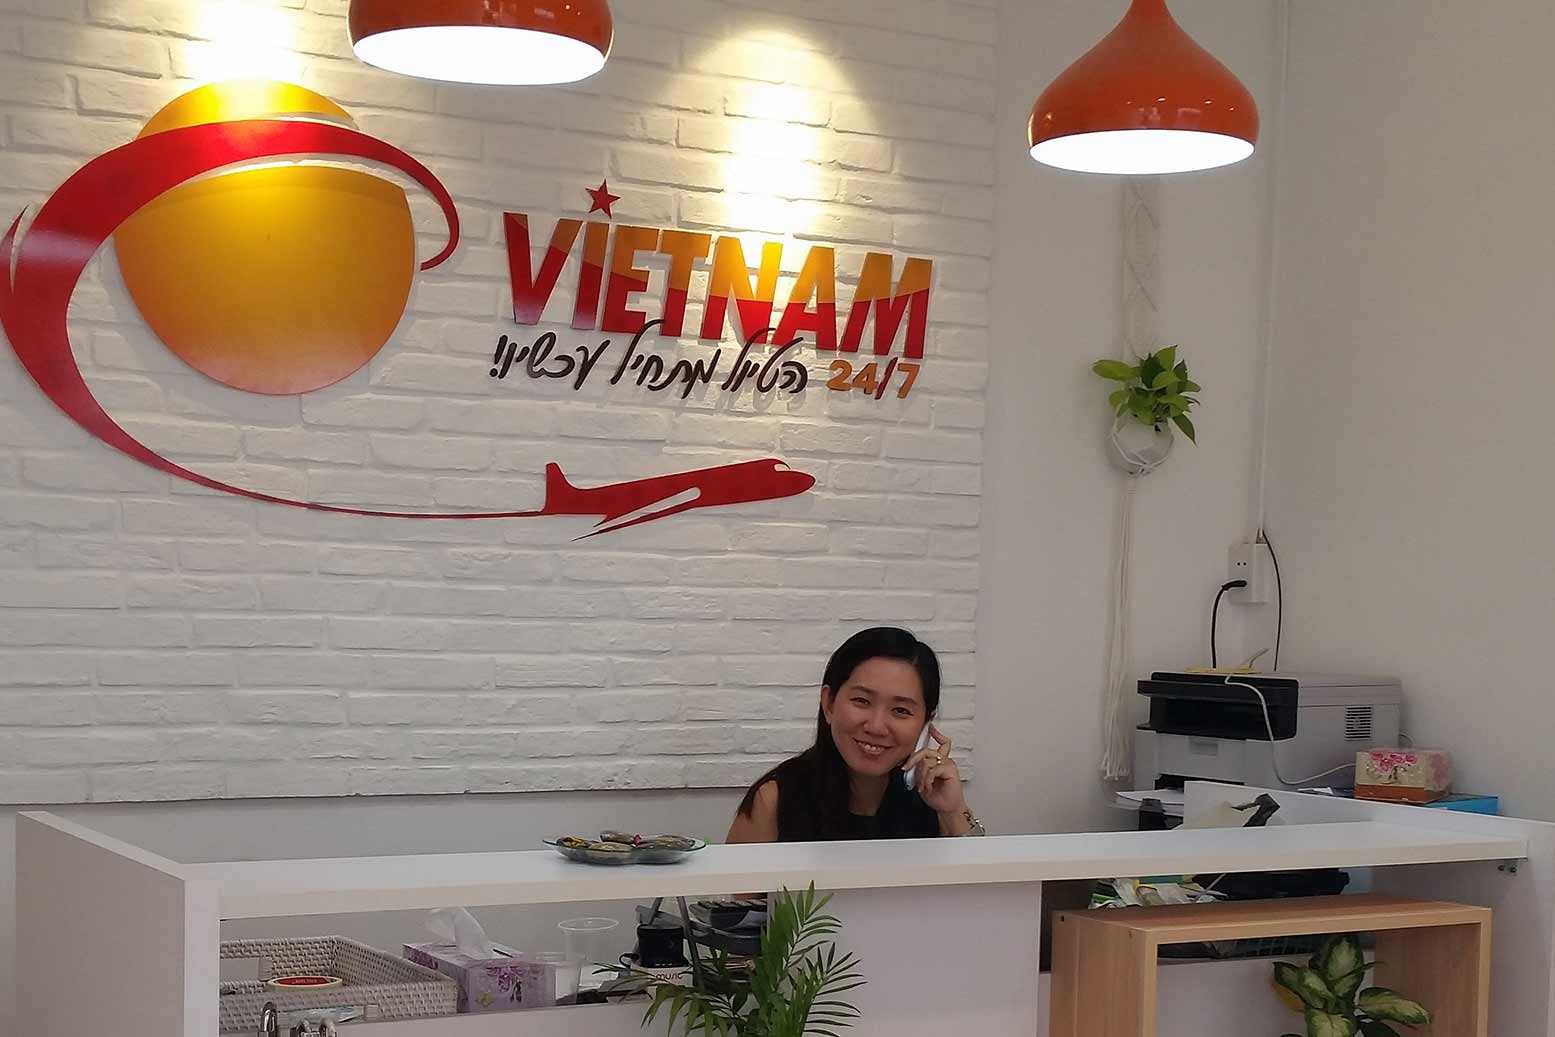 קבלת משרד וייטנאם